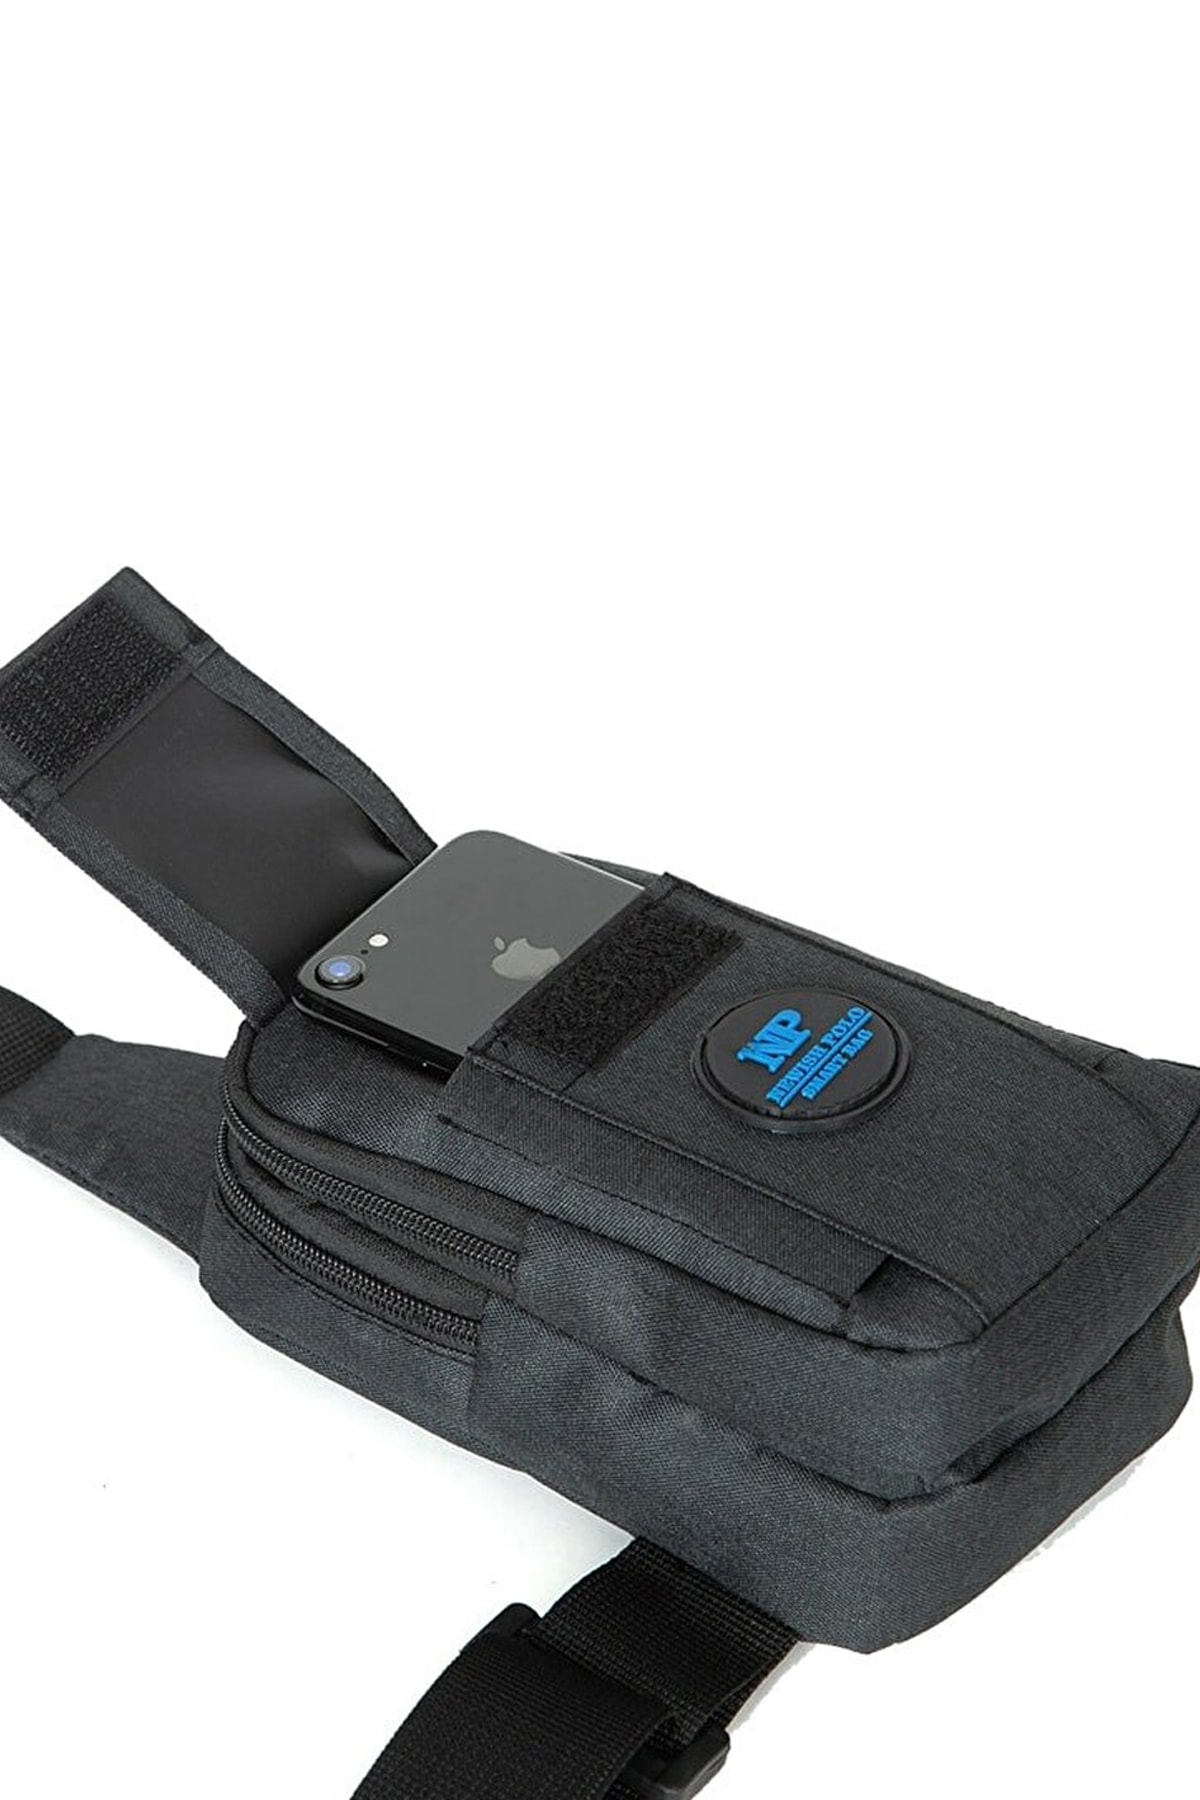 AVCA Unisex Çapraz Askılı Çanta Telefon Bölmeli Göğüs Çanta Tek Kol Omuz Bodybag RN10491